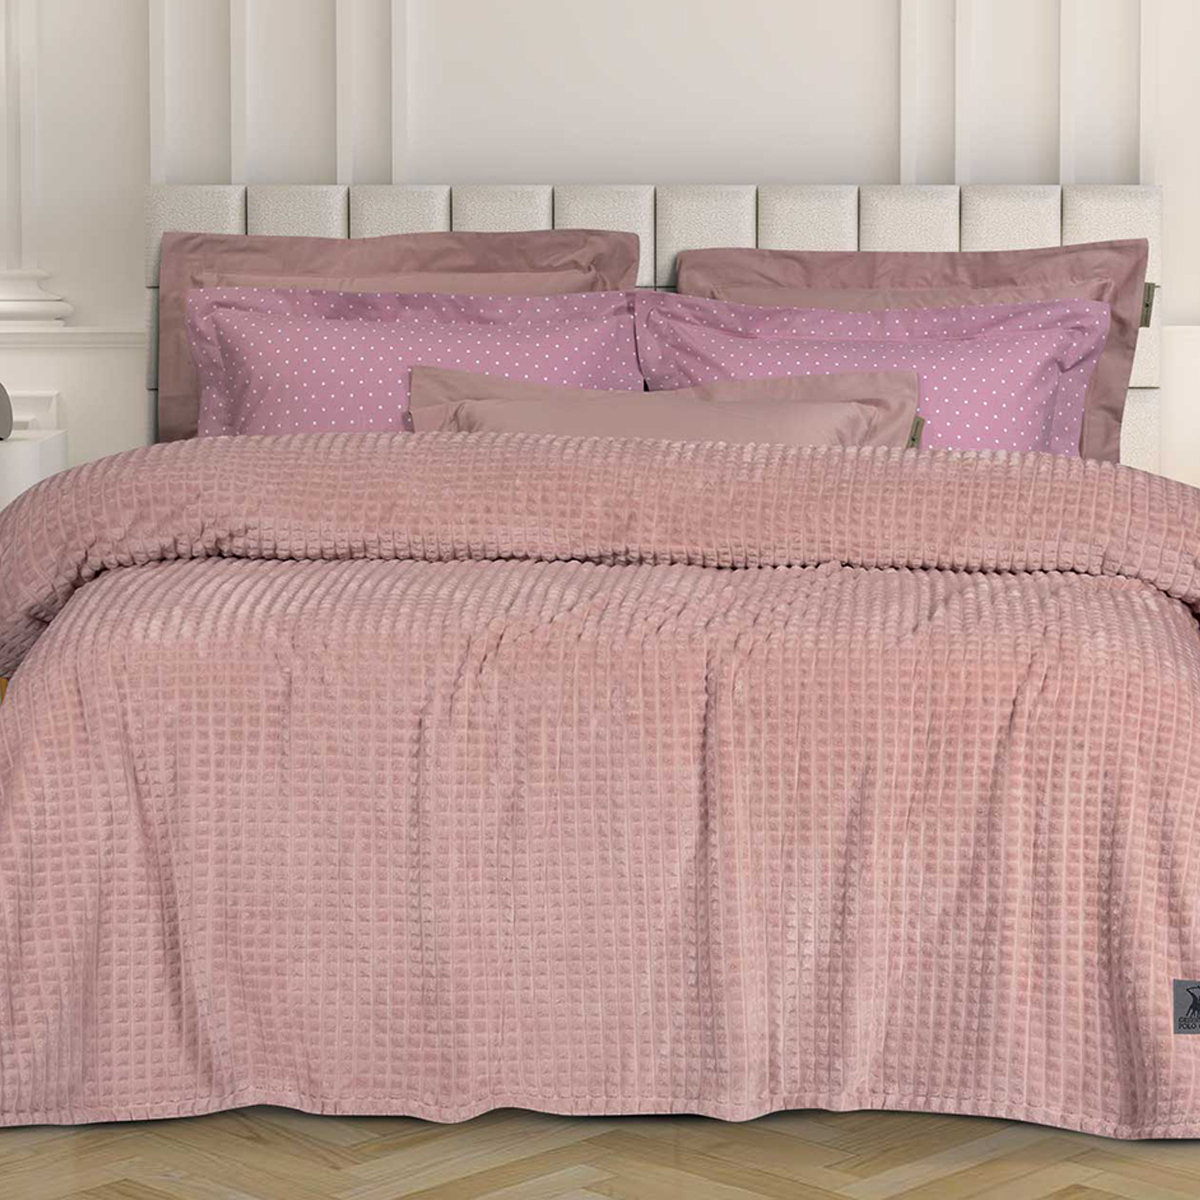 Κουβέρτα Fleece Υπέρδιπλη (220×240) Greenwich Polo Club Essential 3449 Pink